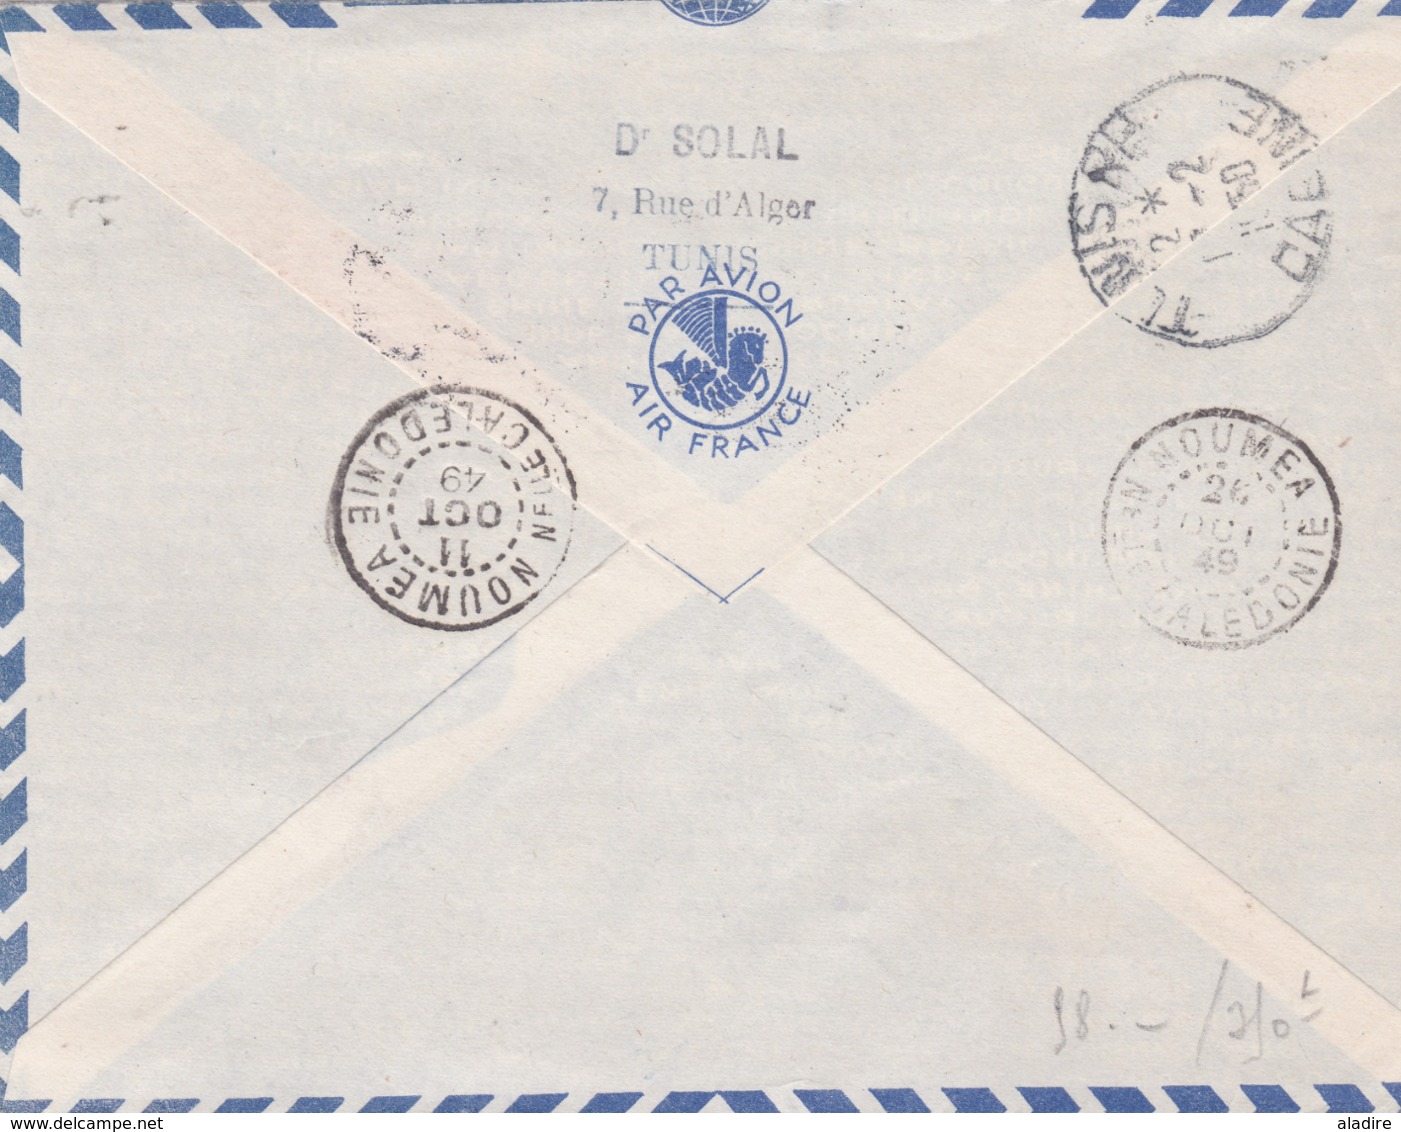 TUNISIE - Marcophilie avant indépendance - collection de 18 enveloppes, Cp et 1 entier - 36 scans recto & verso